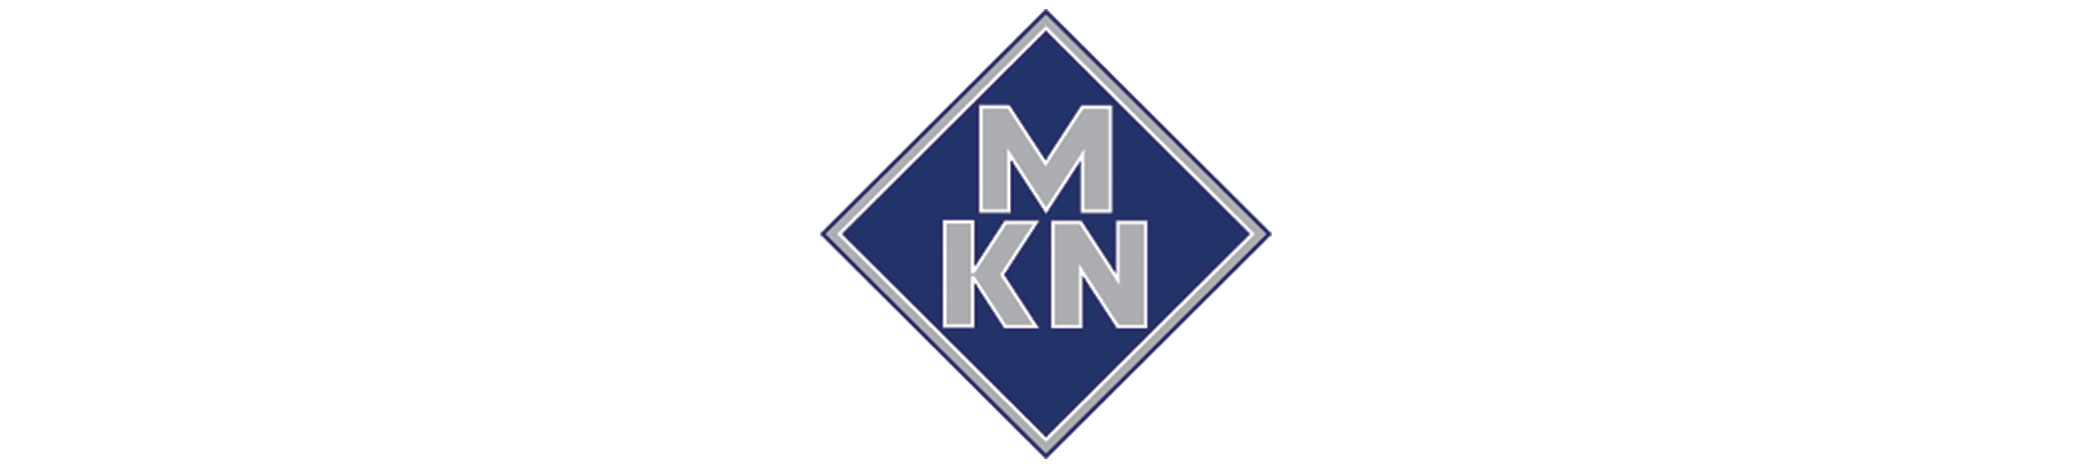 mkn-banner.jpg